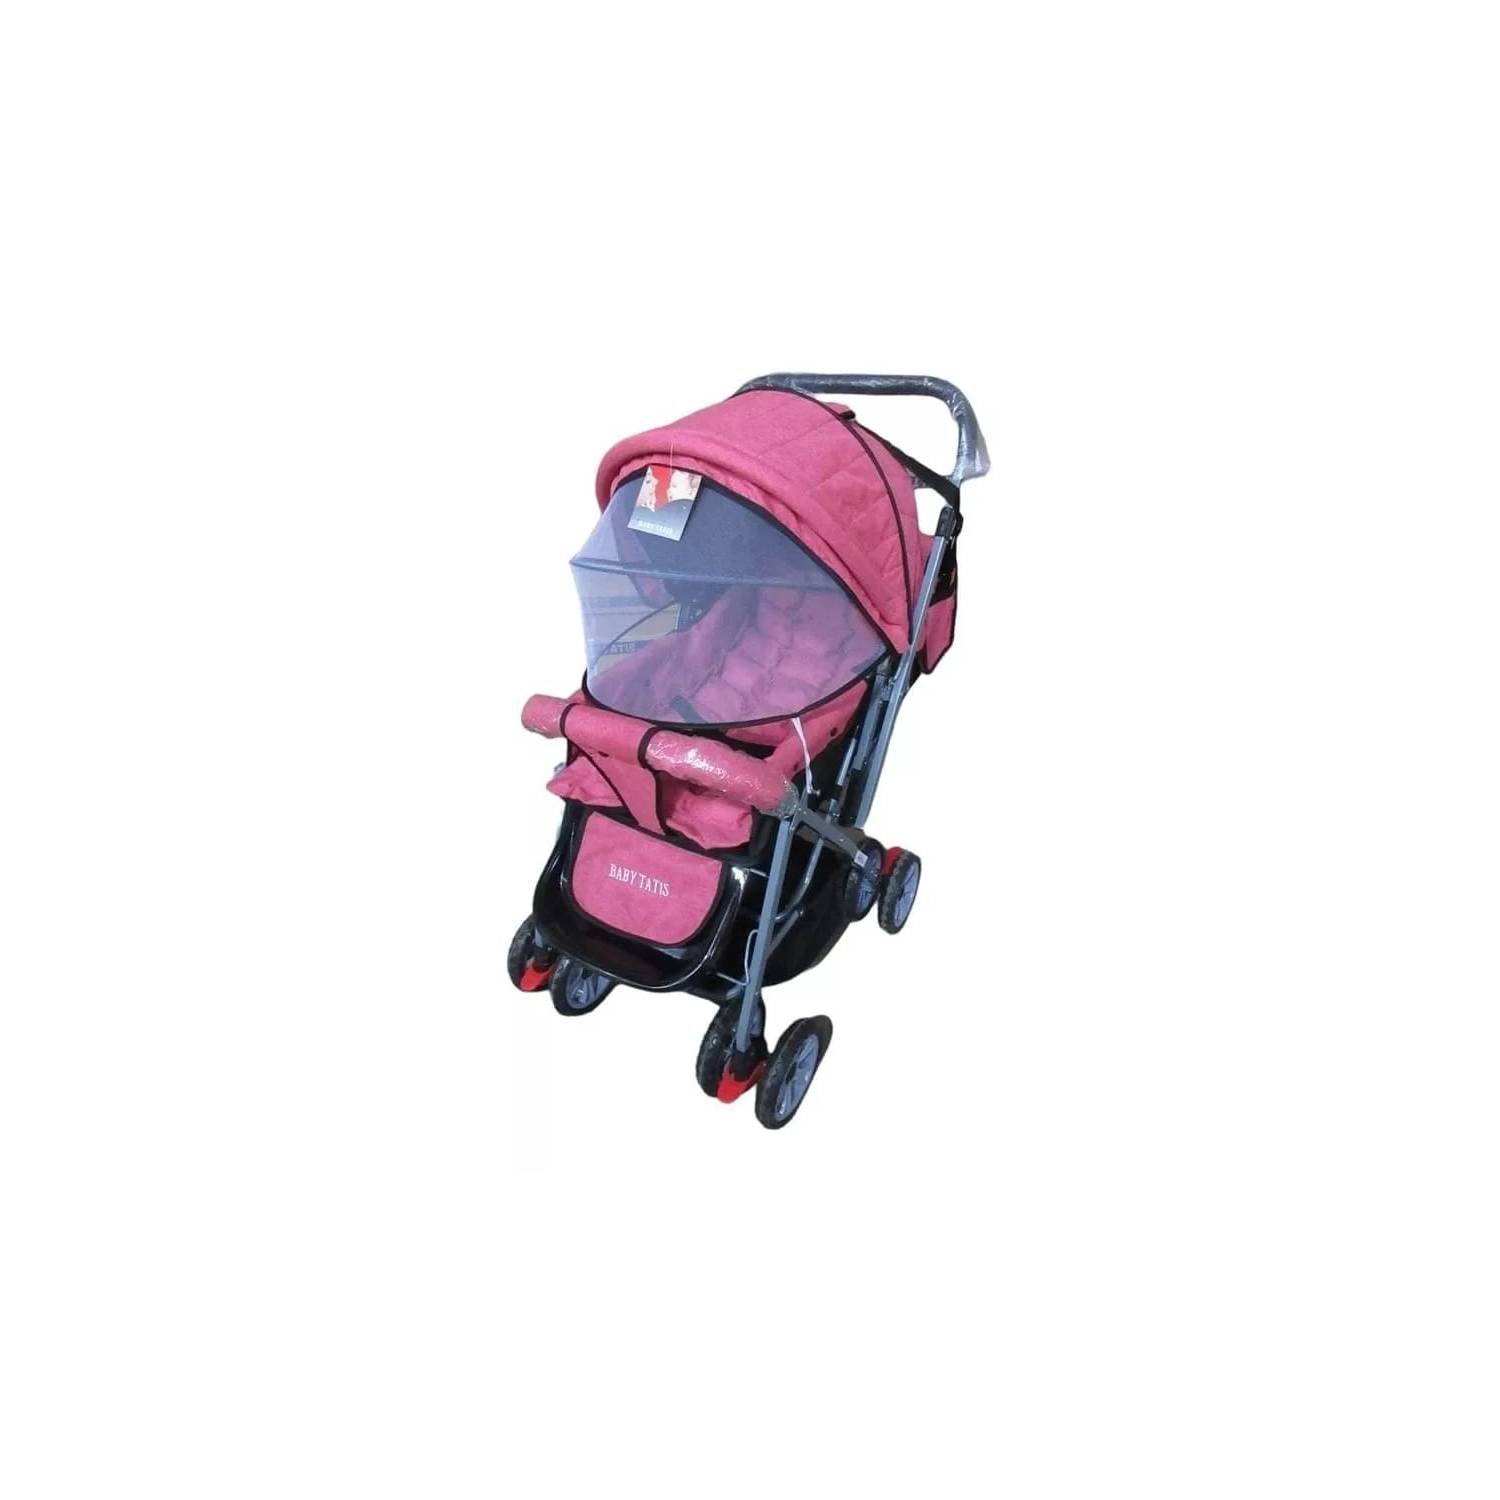 Coche para bebé 4 ruedas con porta bebe negro/rosado Spectrum –